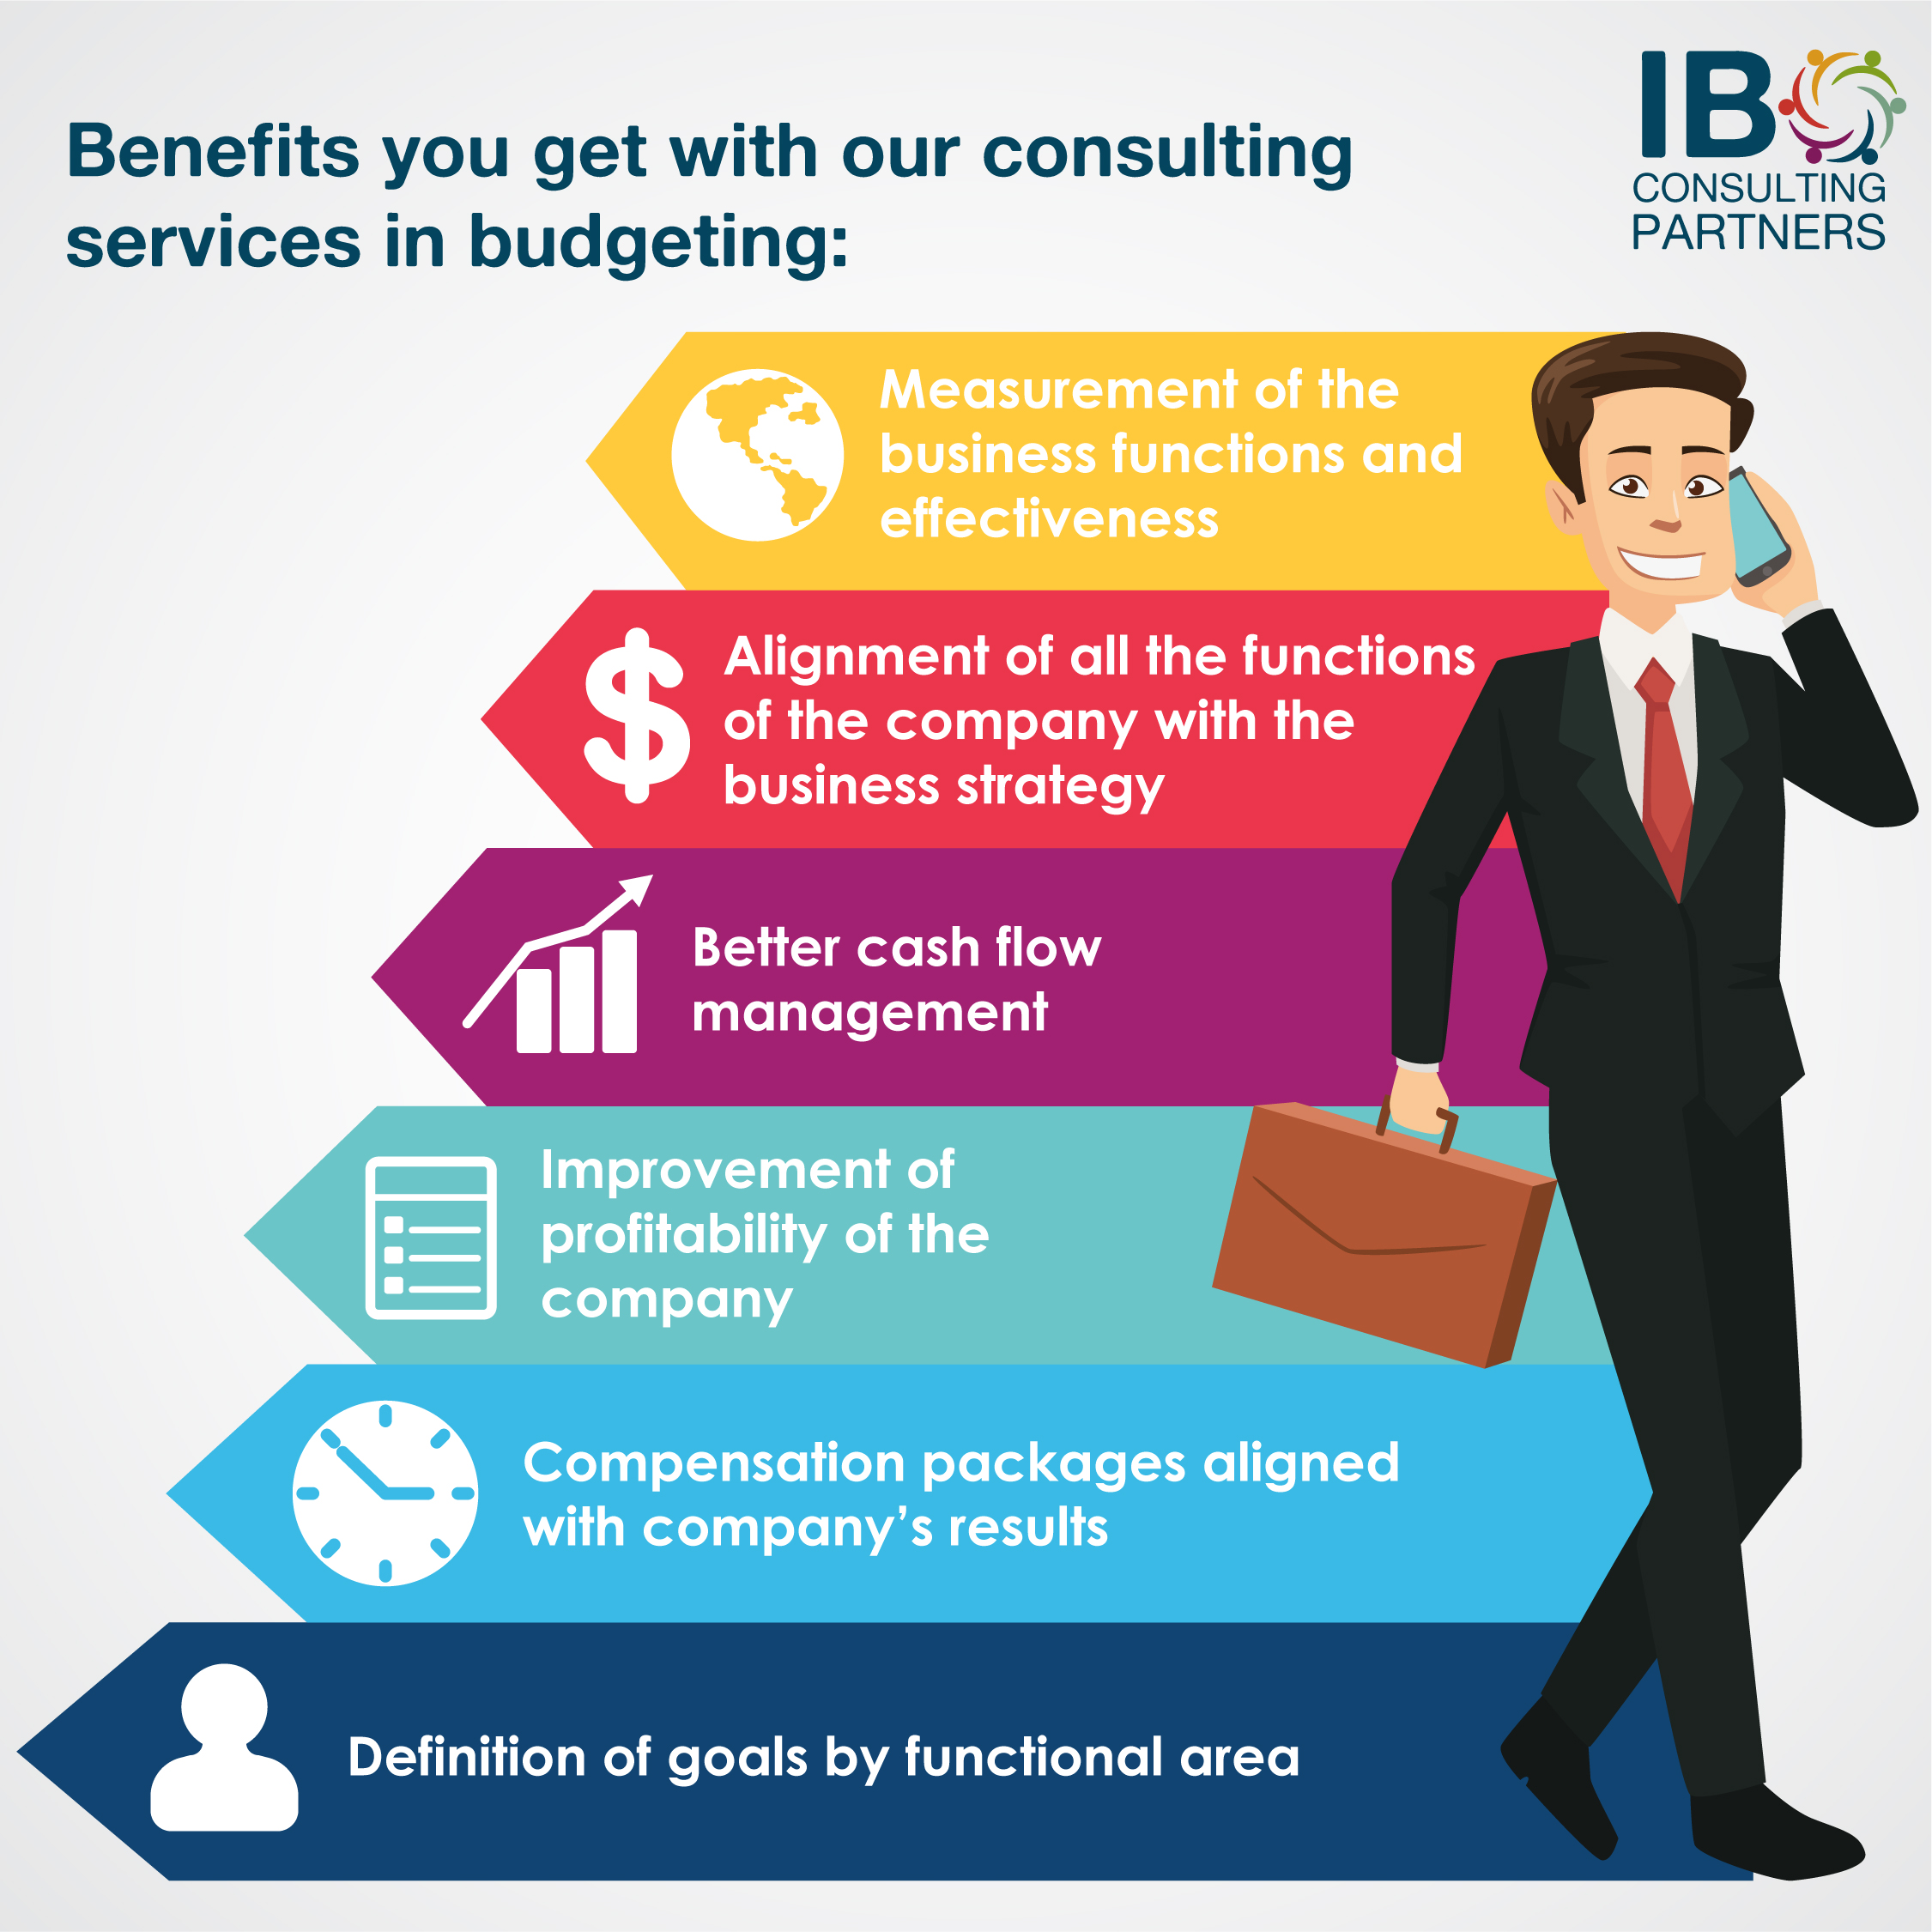 IB Consulting Partners We help you create your company’s budget aligned with corporate goals. Le ayudamos a crear e implementar el presupuesto para que este alineado con su plan de negocio y contribuya al crecimiento de la empresa.